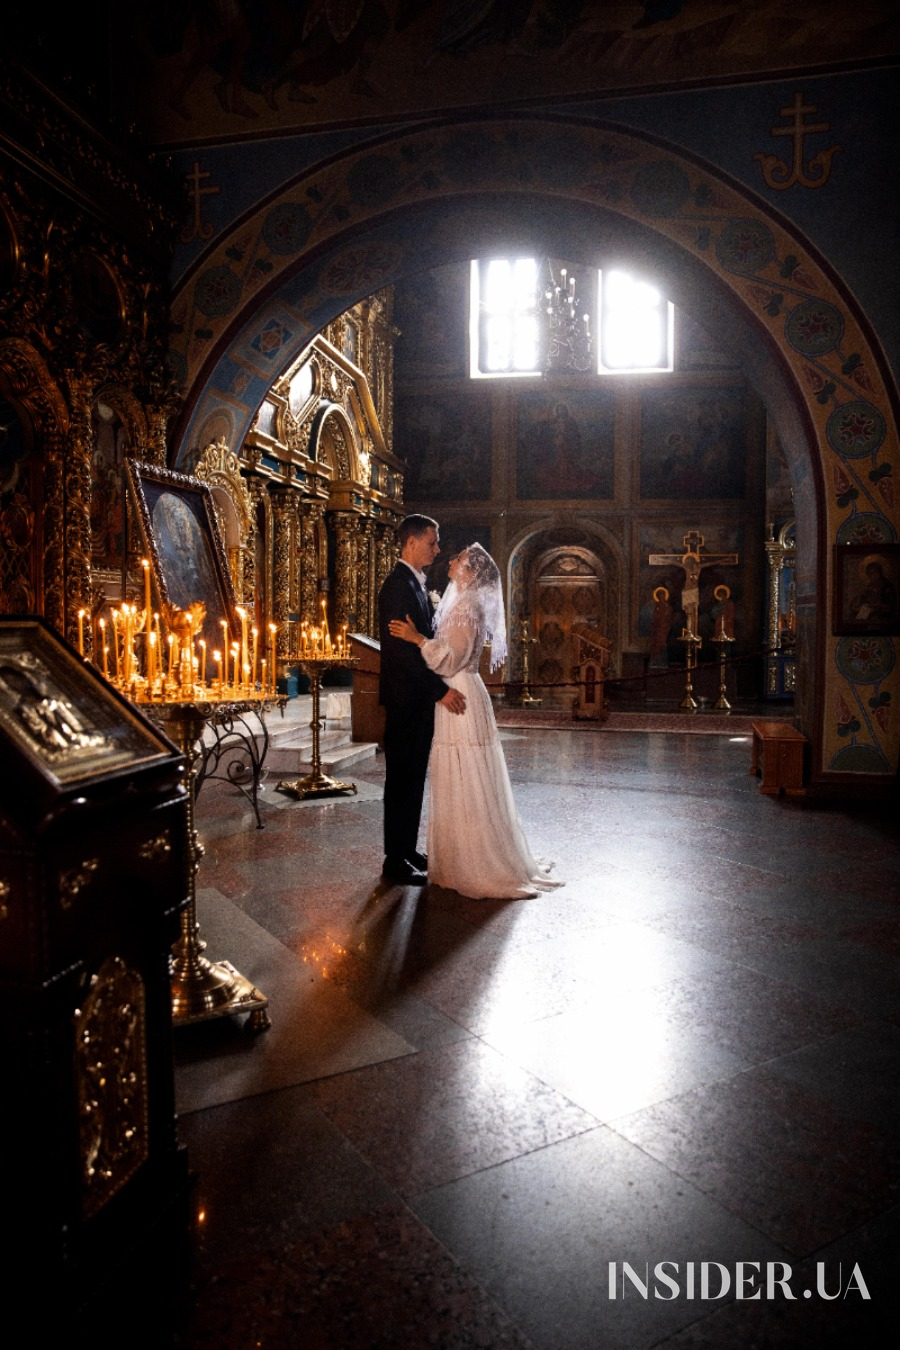 Илона Гвоздева рассказала о церемонии венчания с мужем: эксклюзивные фото и видео